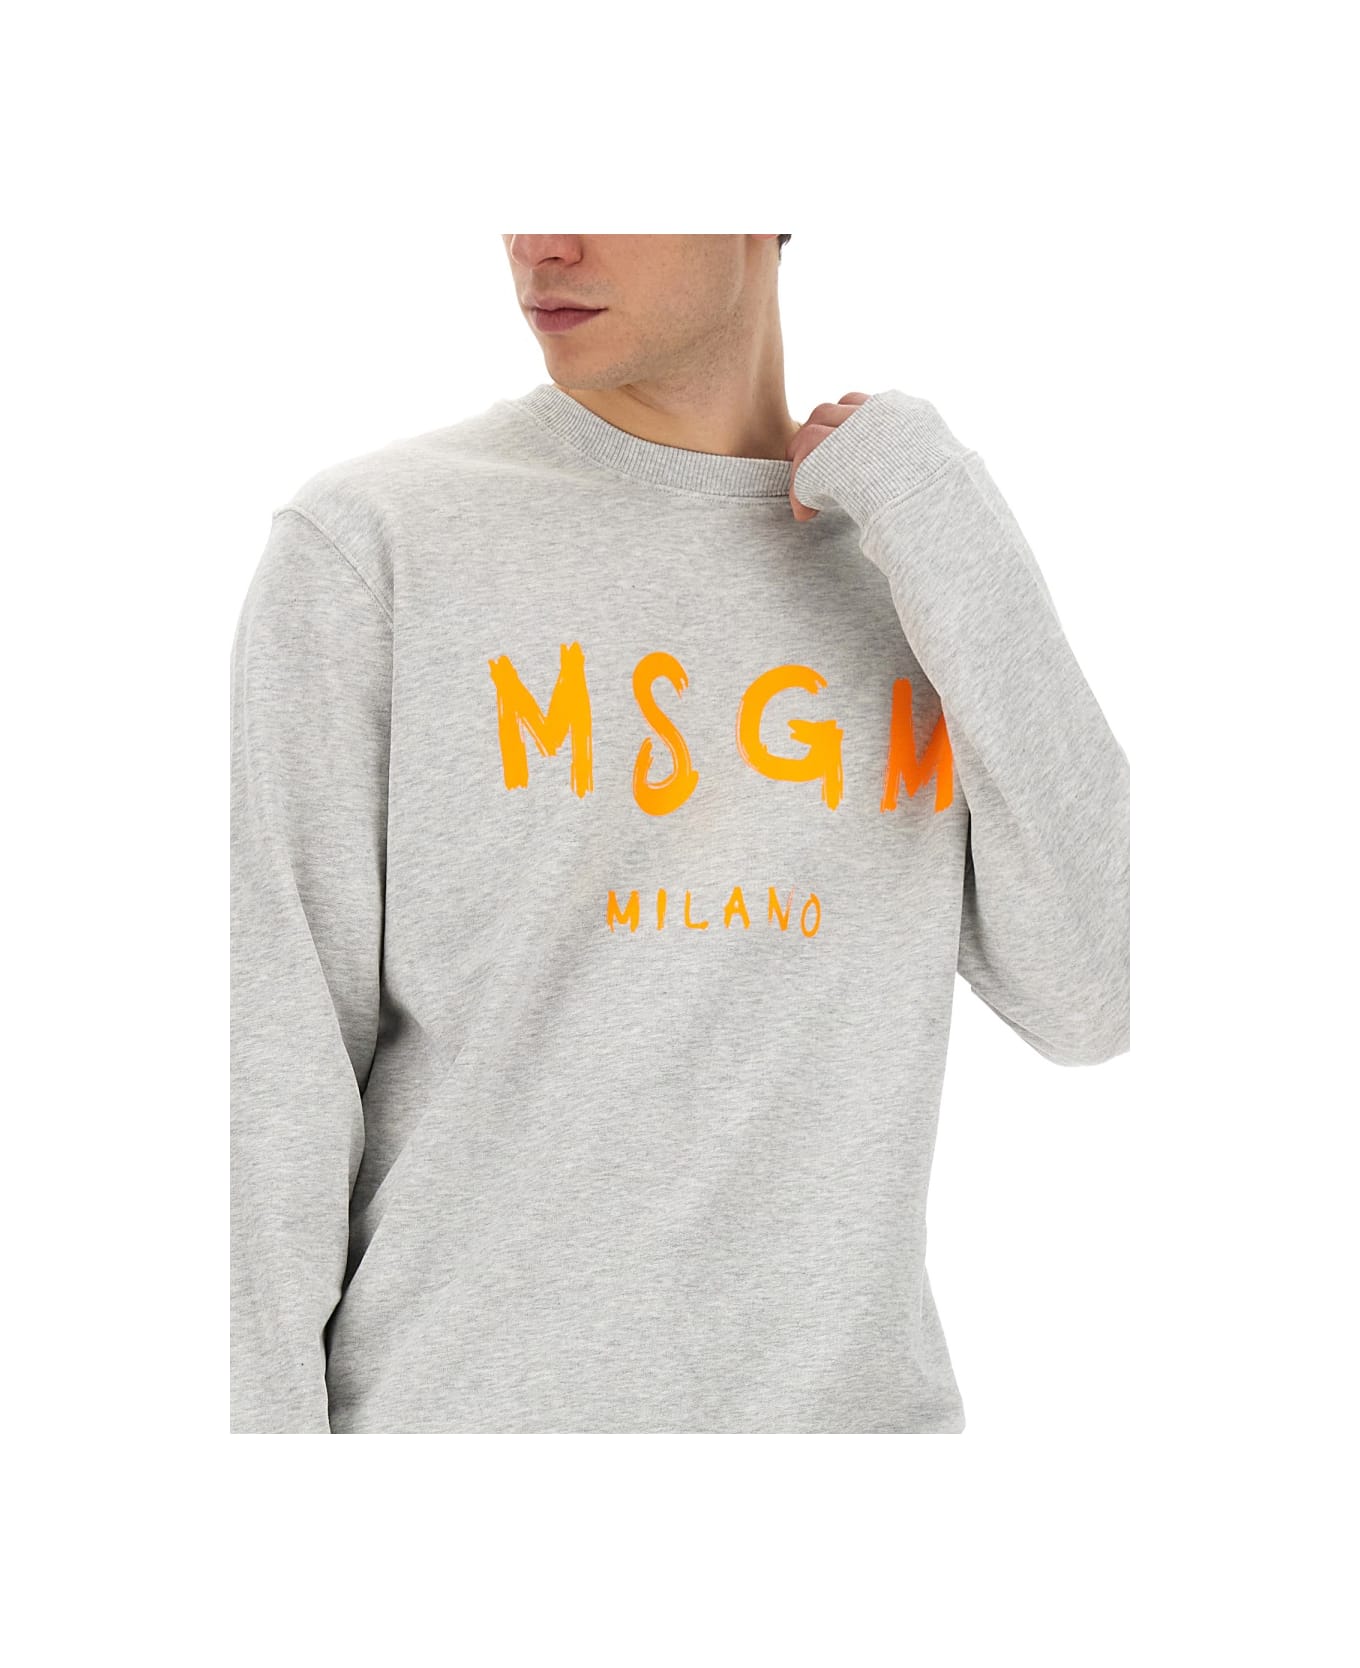 MSGM Sweatshirt With Logo - GREY フリース